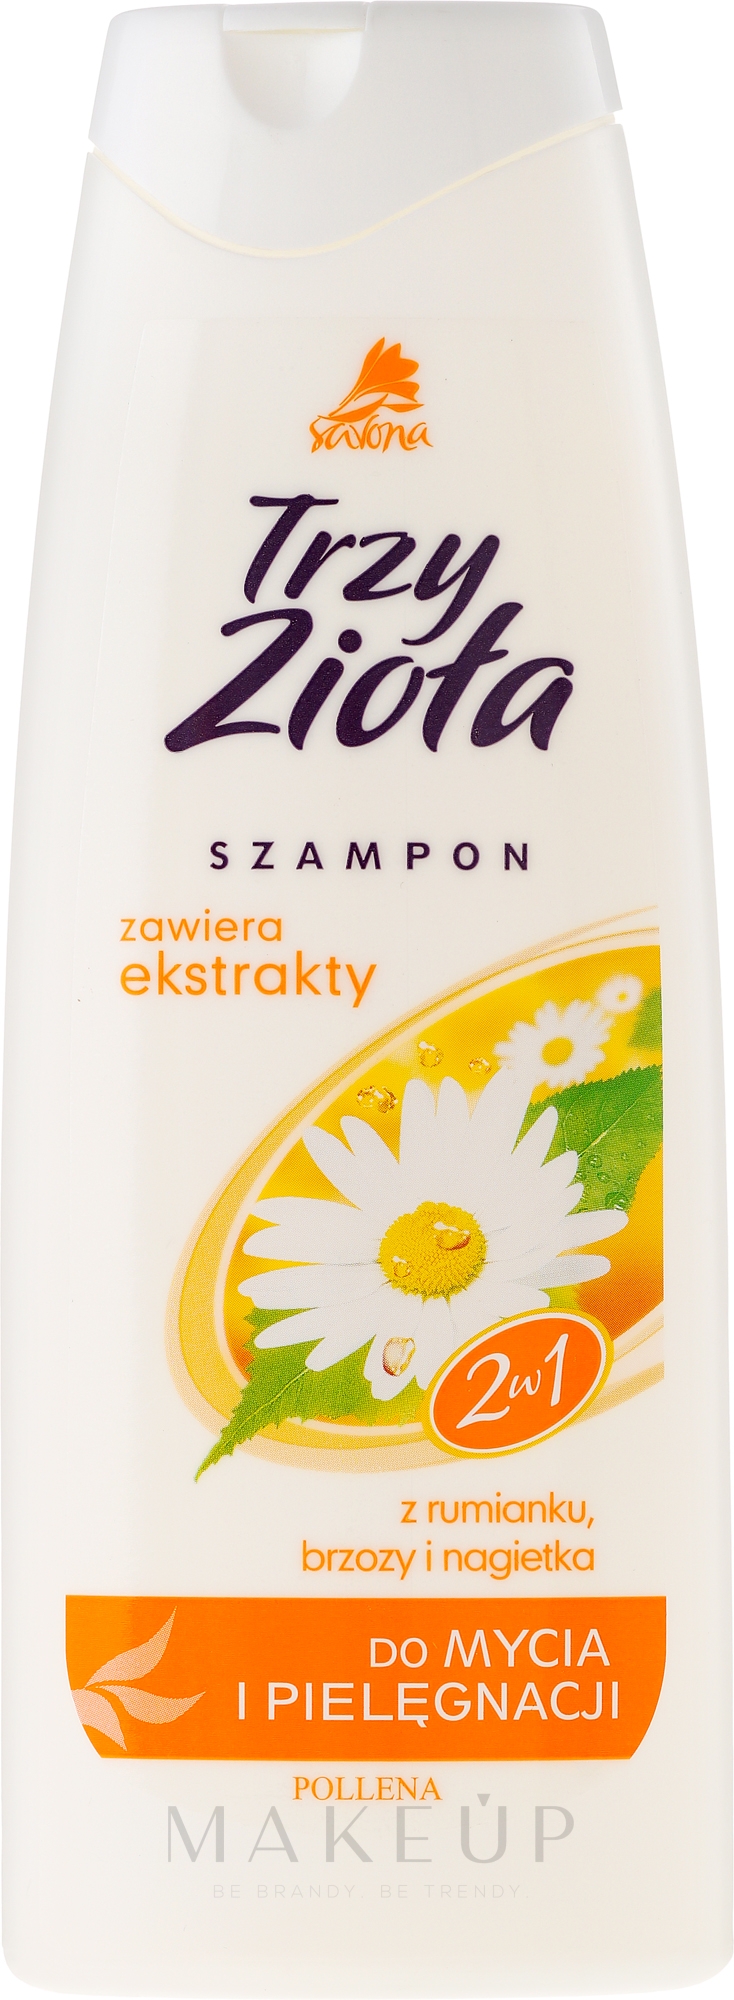 2in1 Shampoo&Conditioner mit Ringelblumen-, Kamillen- und Birkenextrakt - Savona Three Herbs Of Calendula Shampoo Conditioner — Foto 250 ml